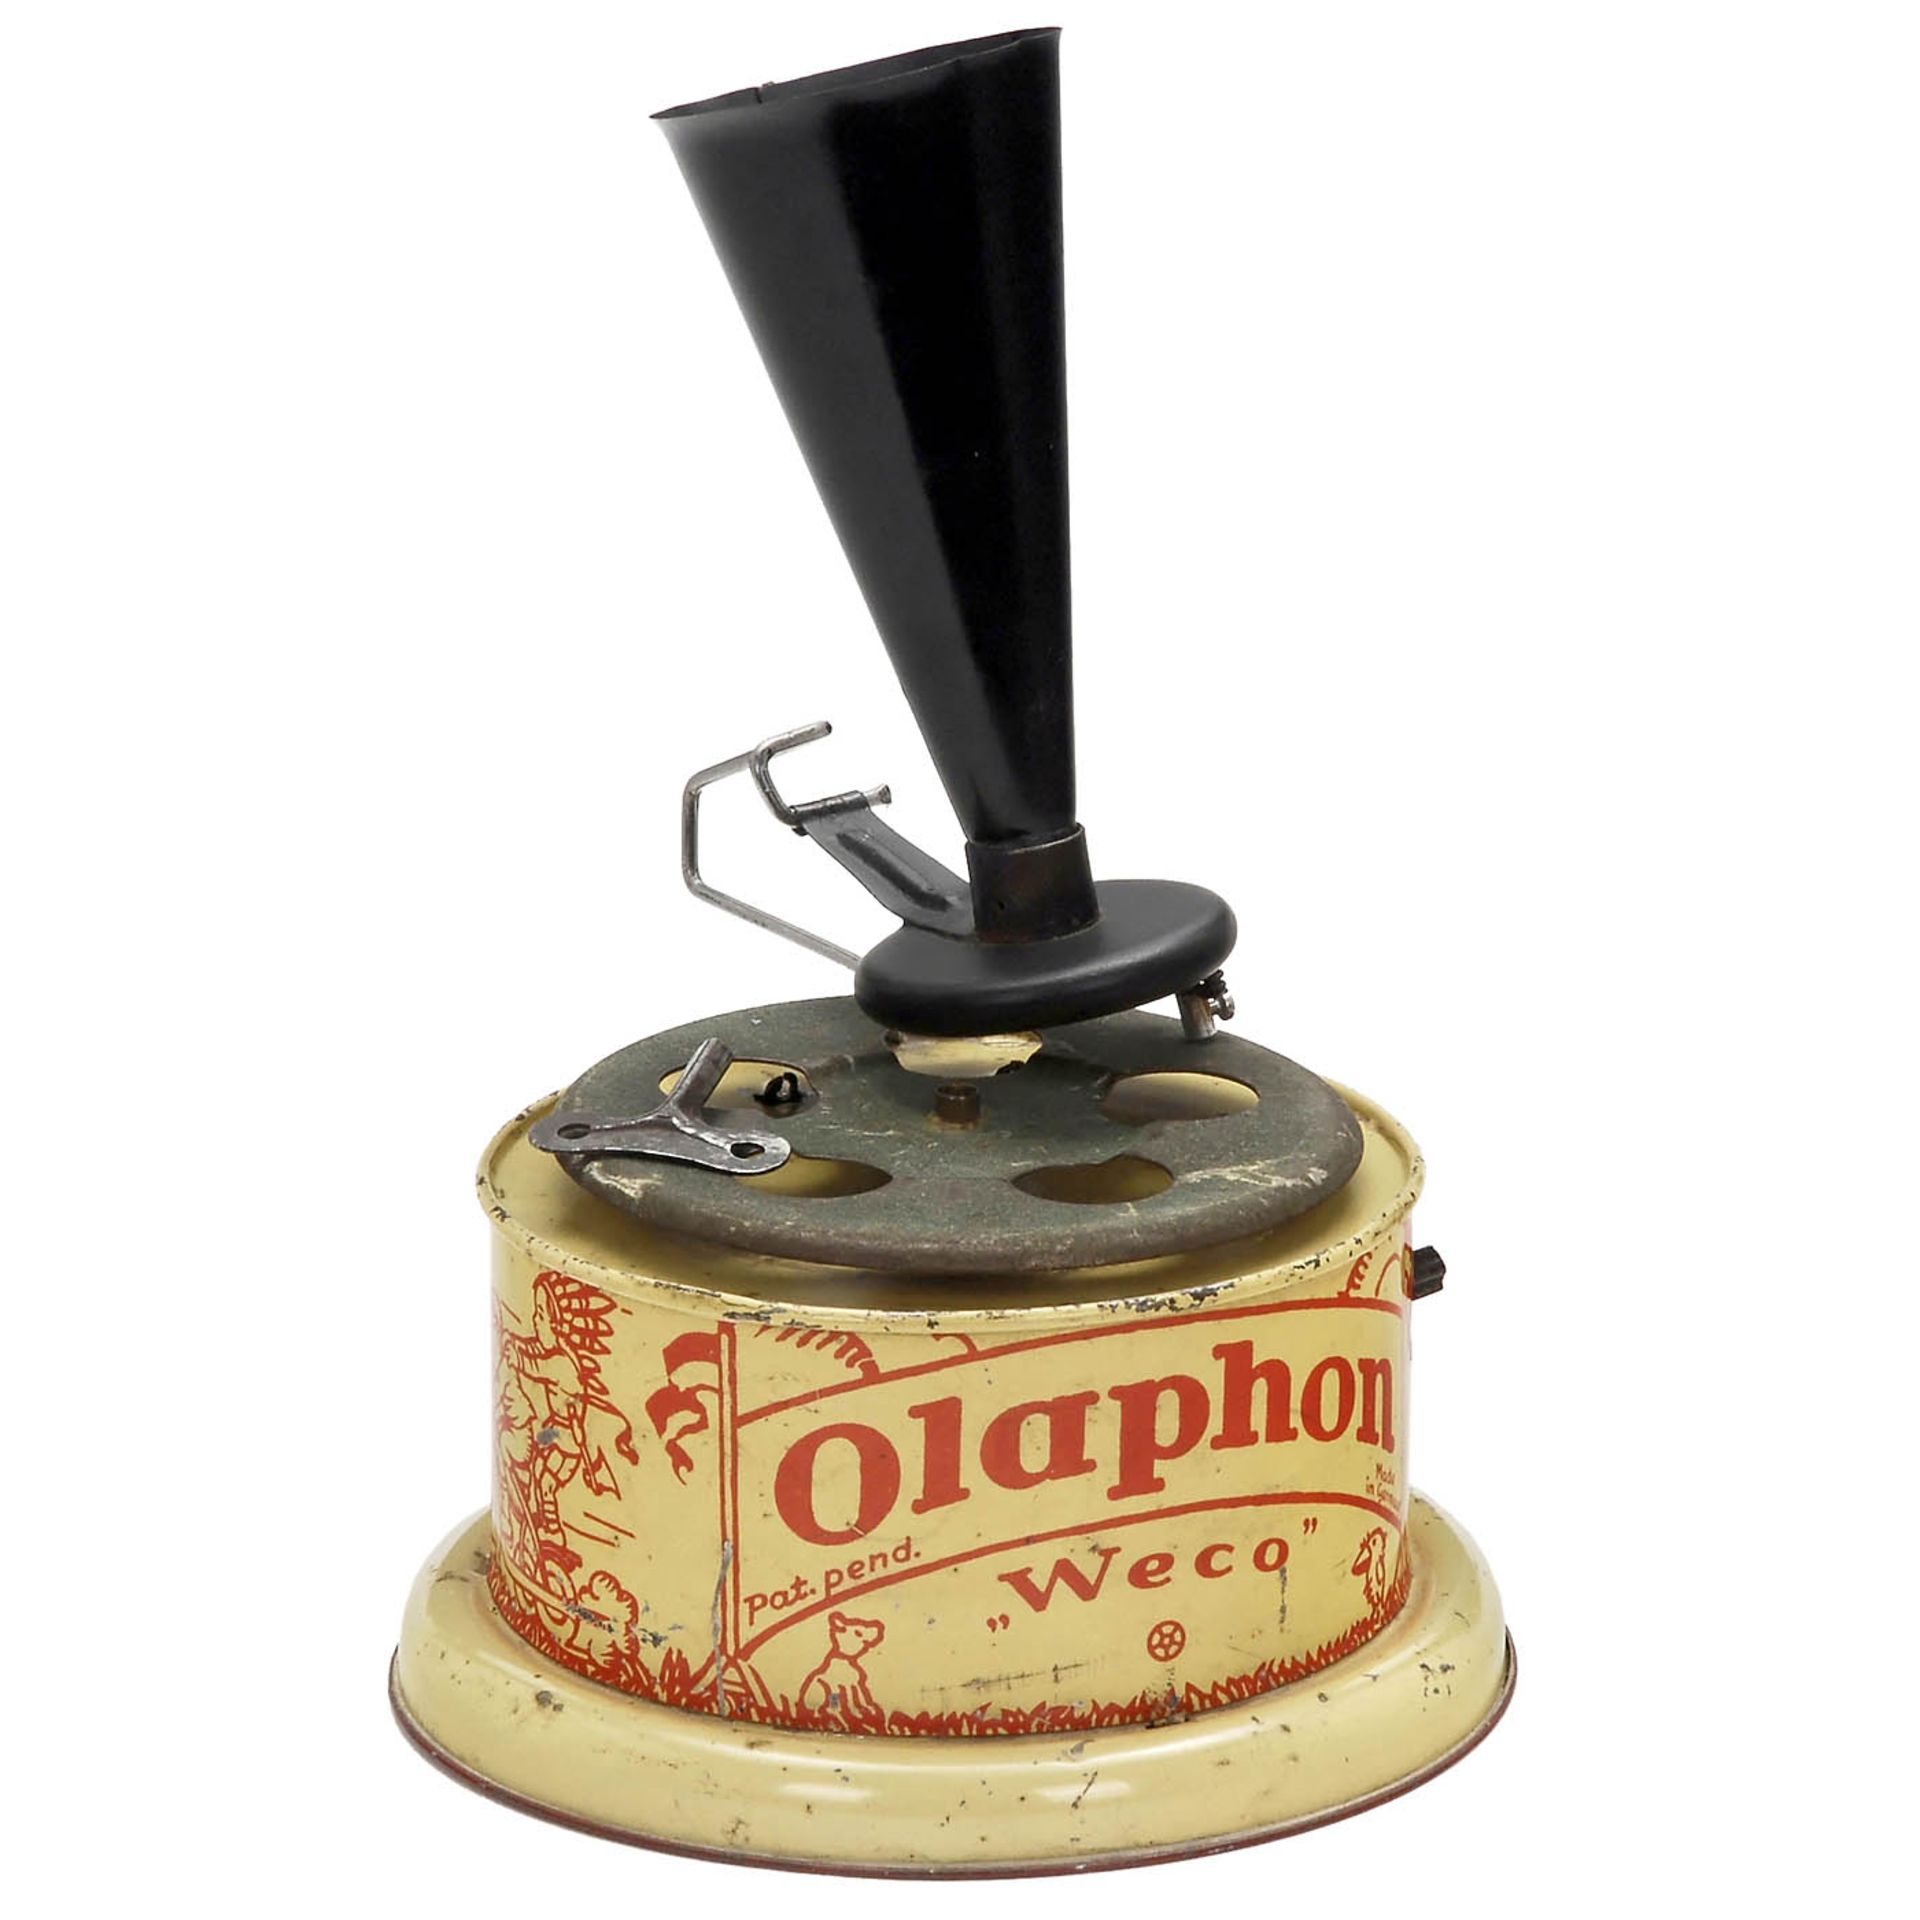 Sehr seltenes Spielzeug-Grammophon "Olaphon" von Weco, um 1925